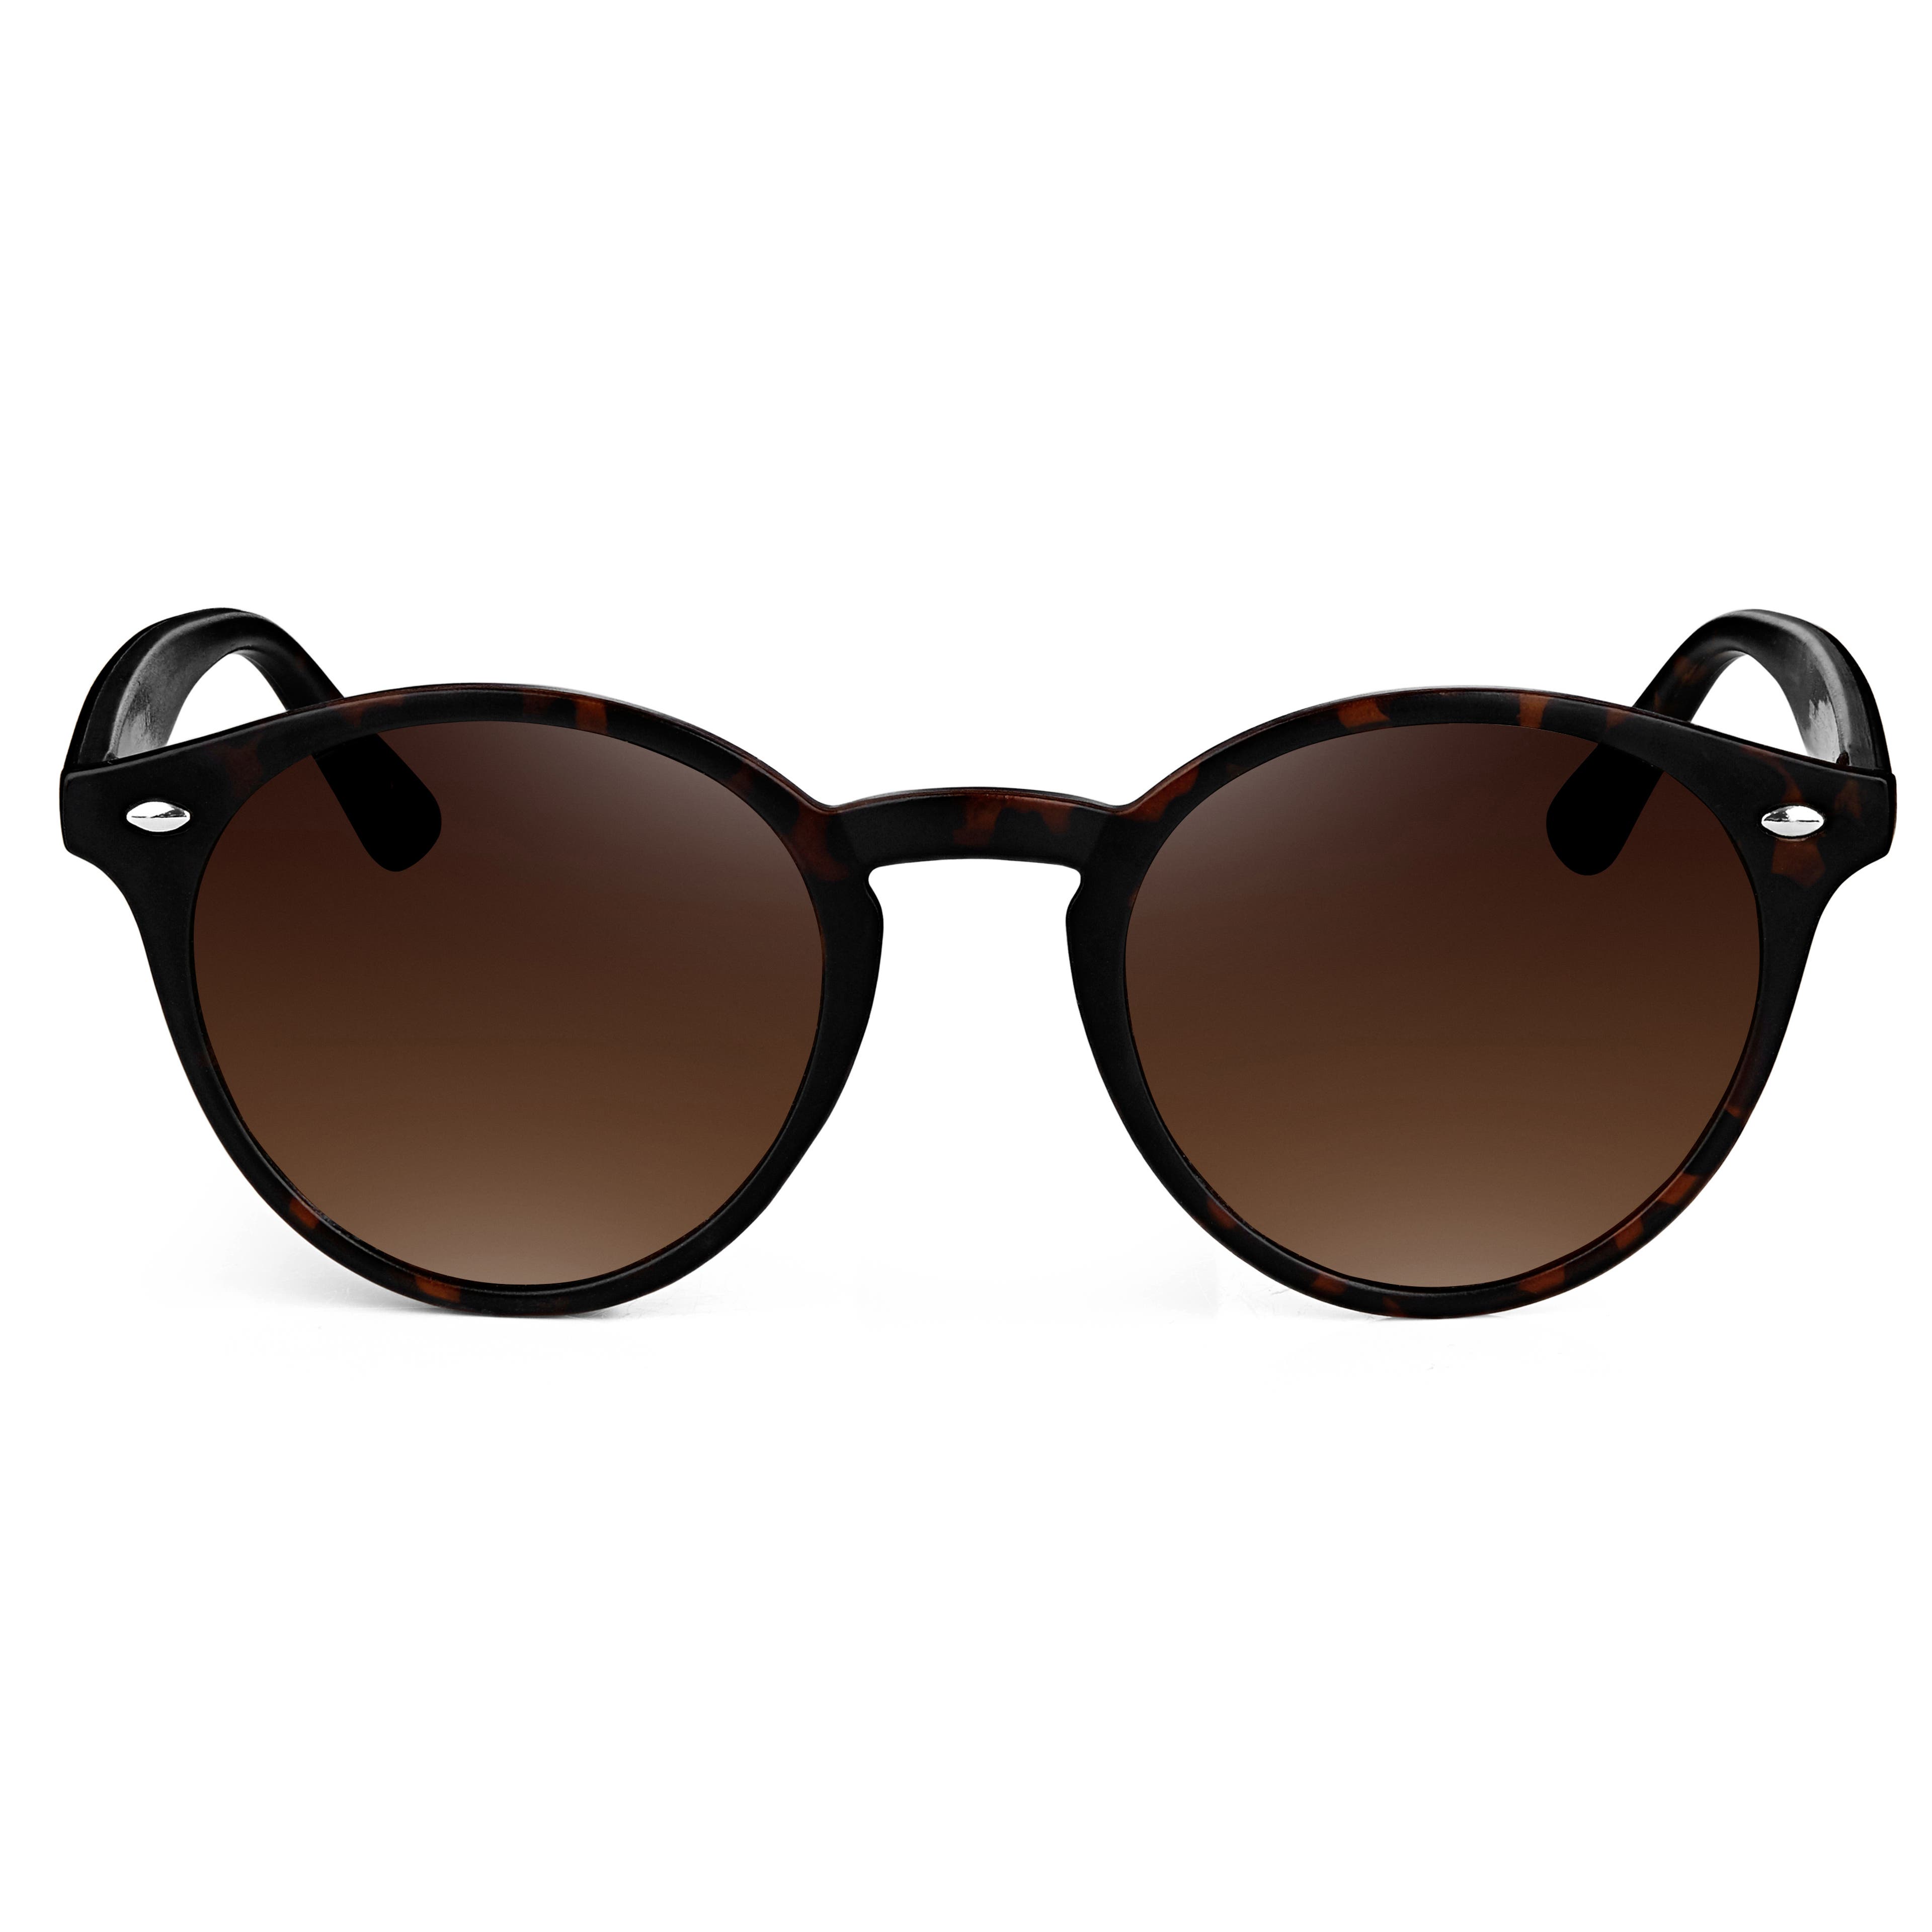 Szylkretowo-brązowe okulary przeciwsłoneczne Wally Wade